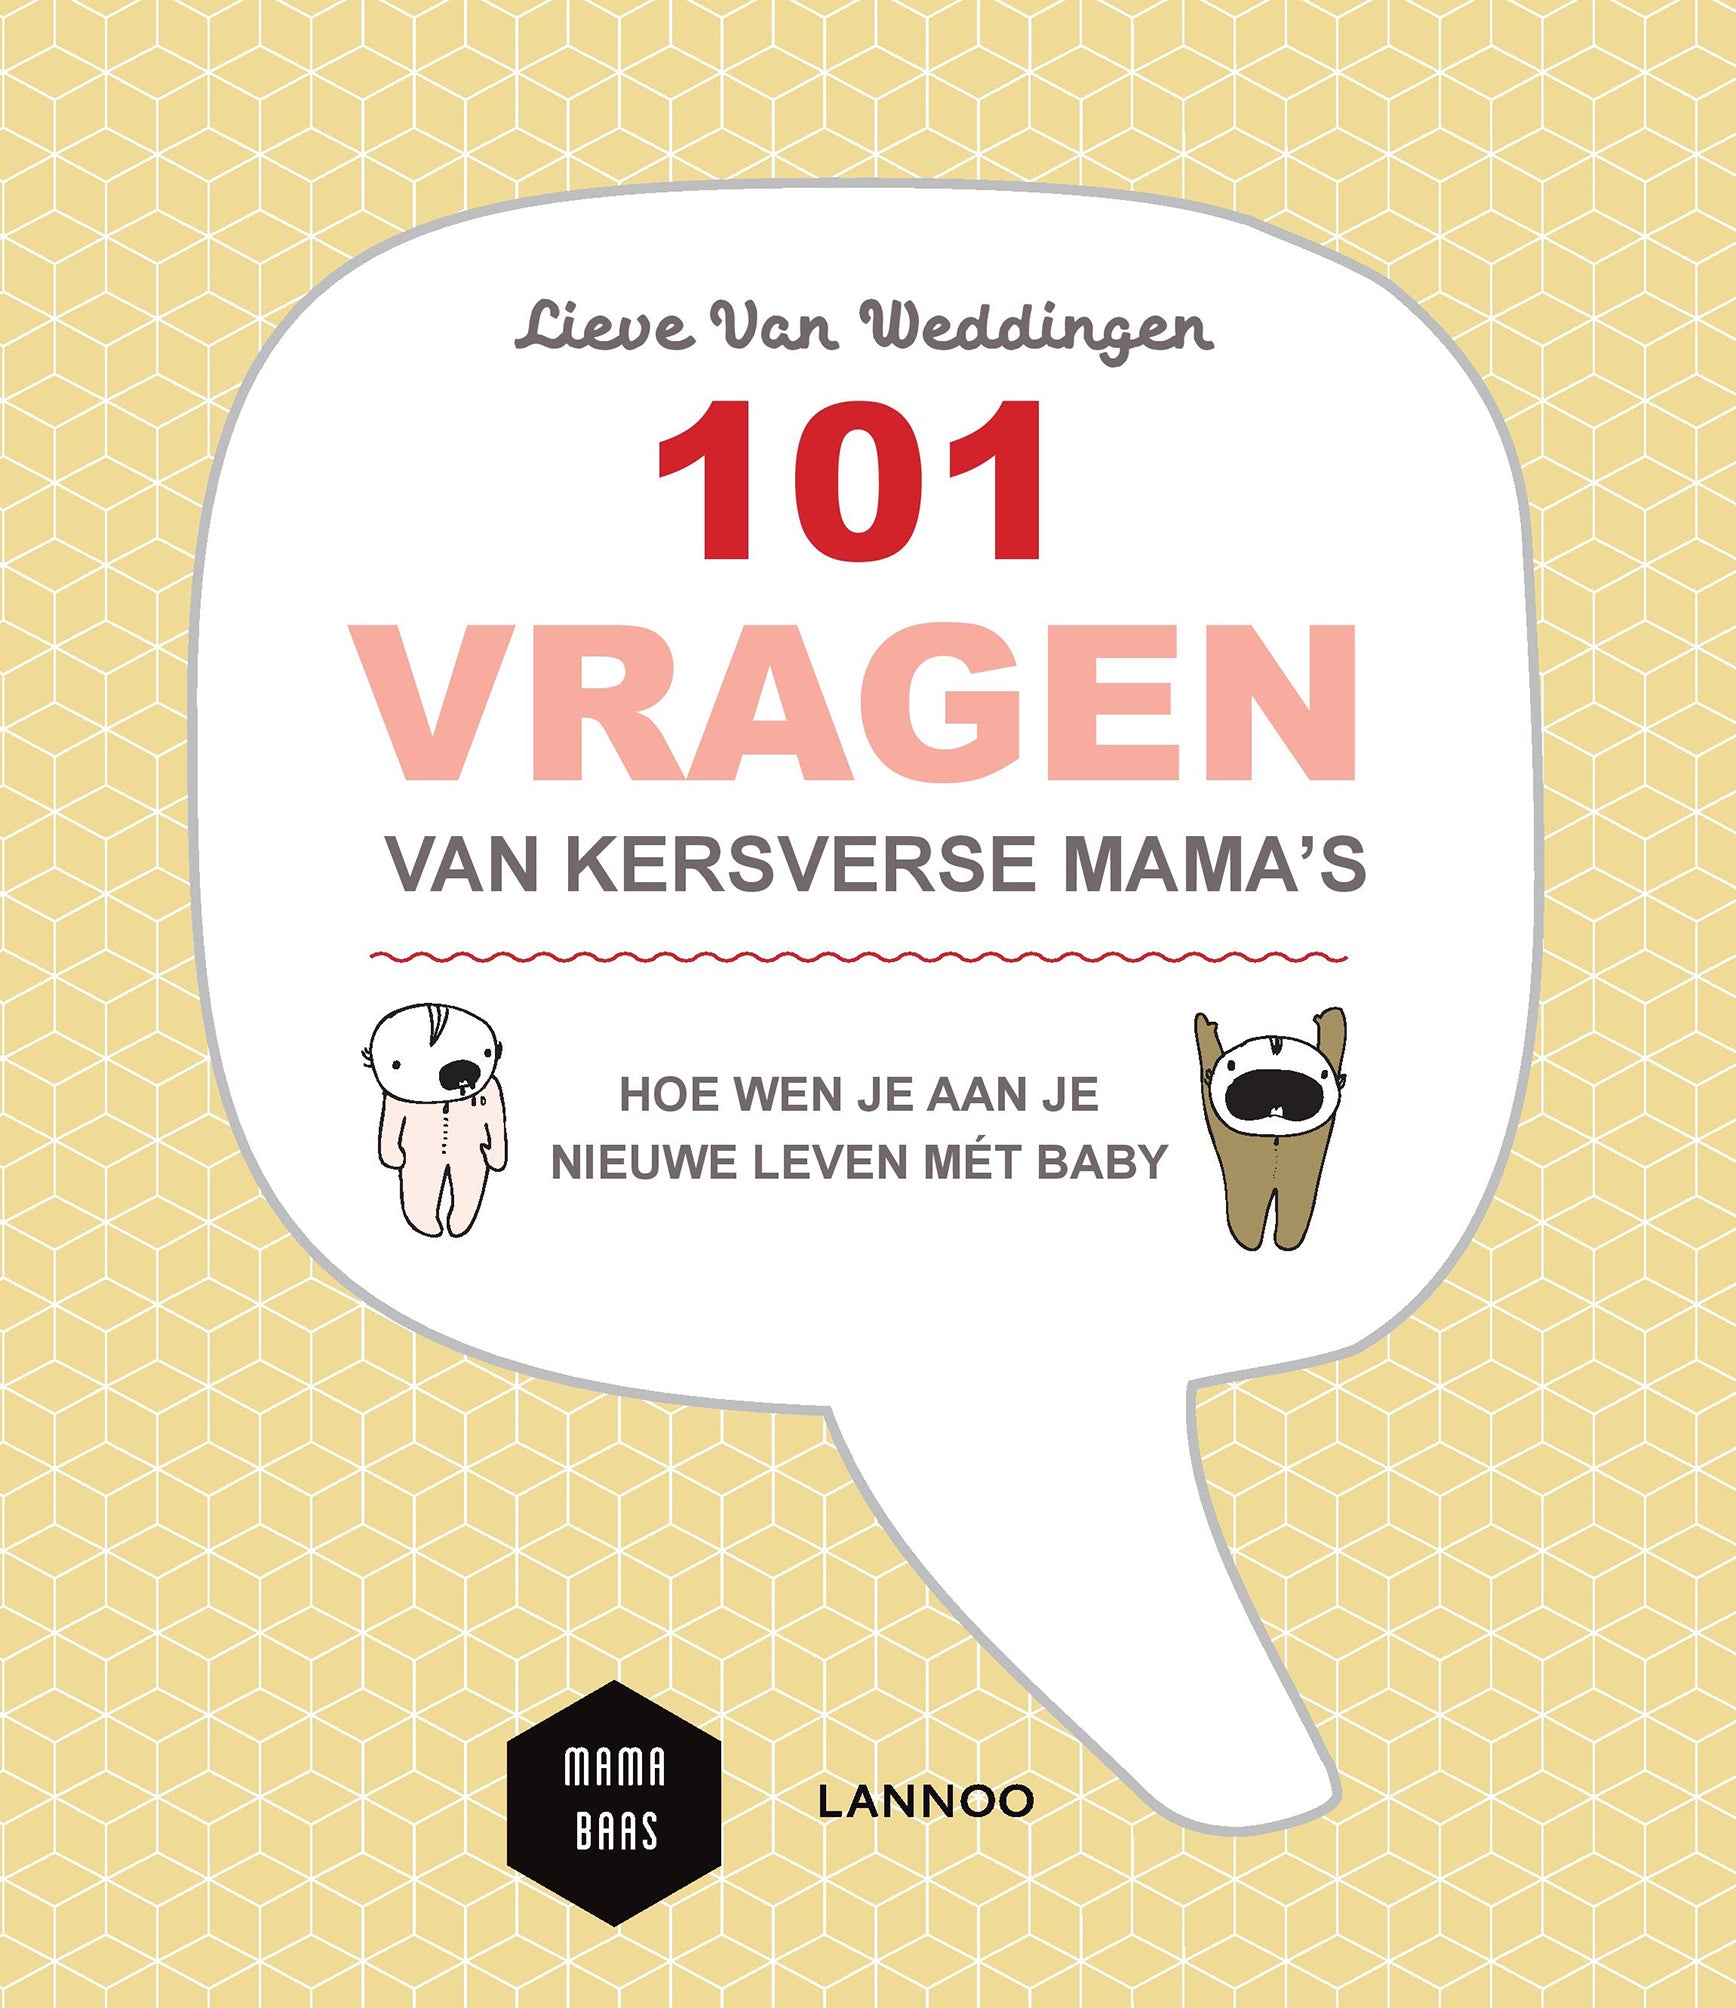 Boek '101 vragen van kersverse mama's' van Lieve Van Weddingen. Dit boek geeft een helder en genuanceerd antwoord op een hele reeks vragen met daarnaast ook enkele praktische tips voor nieuwe mama's..